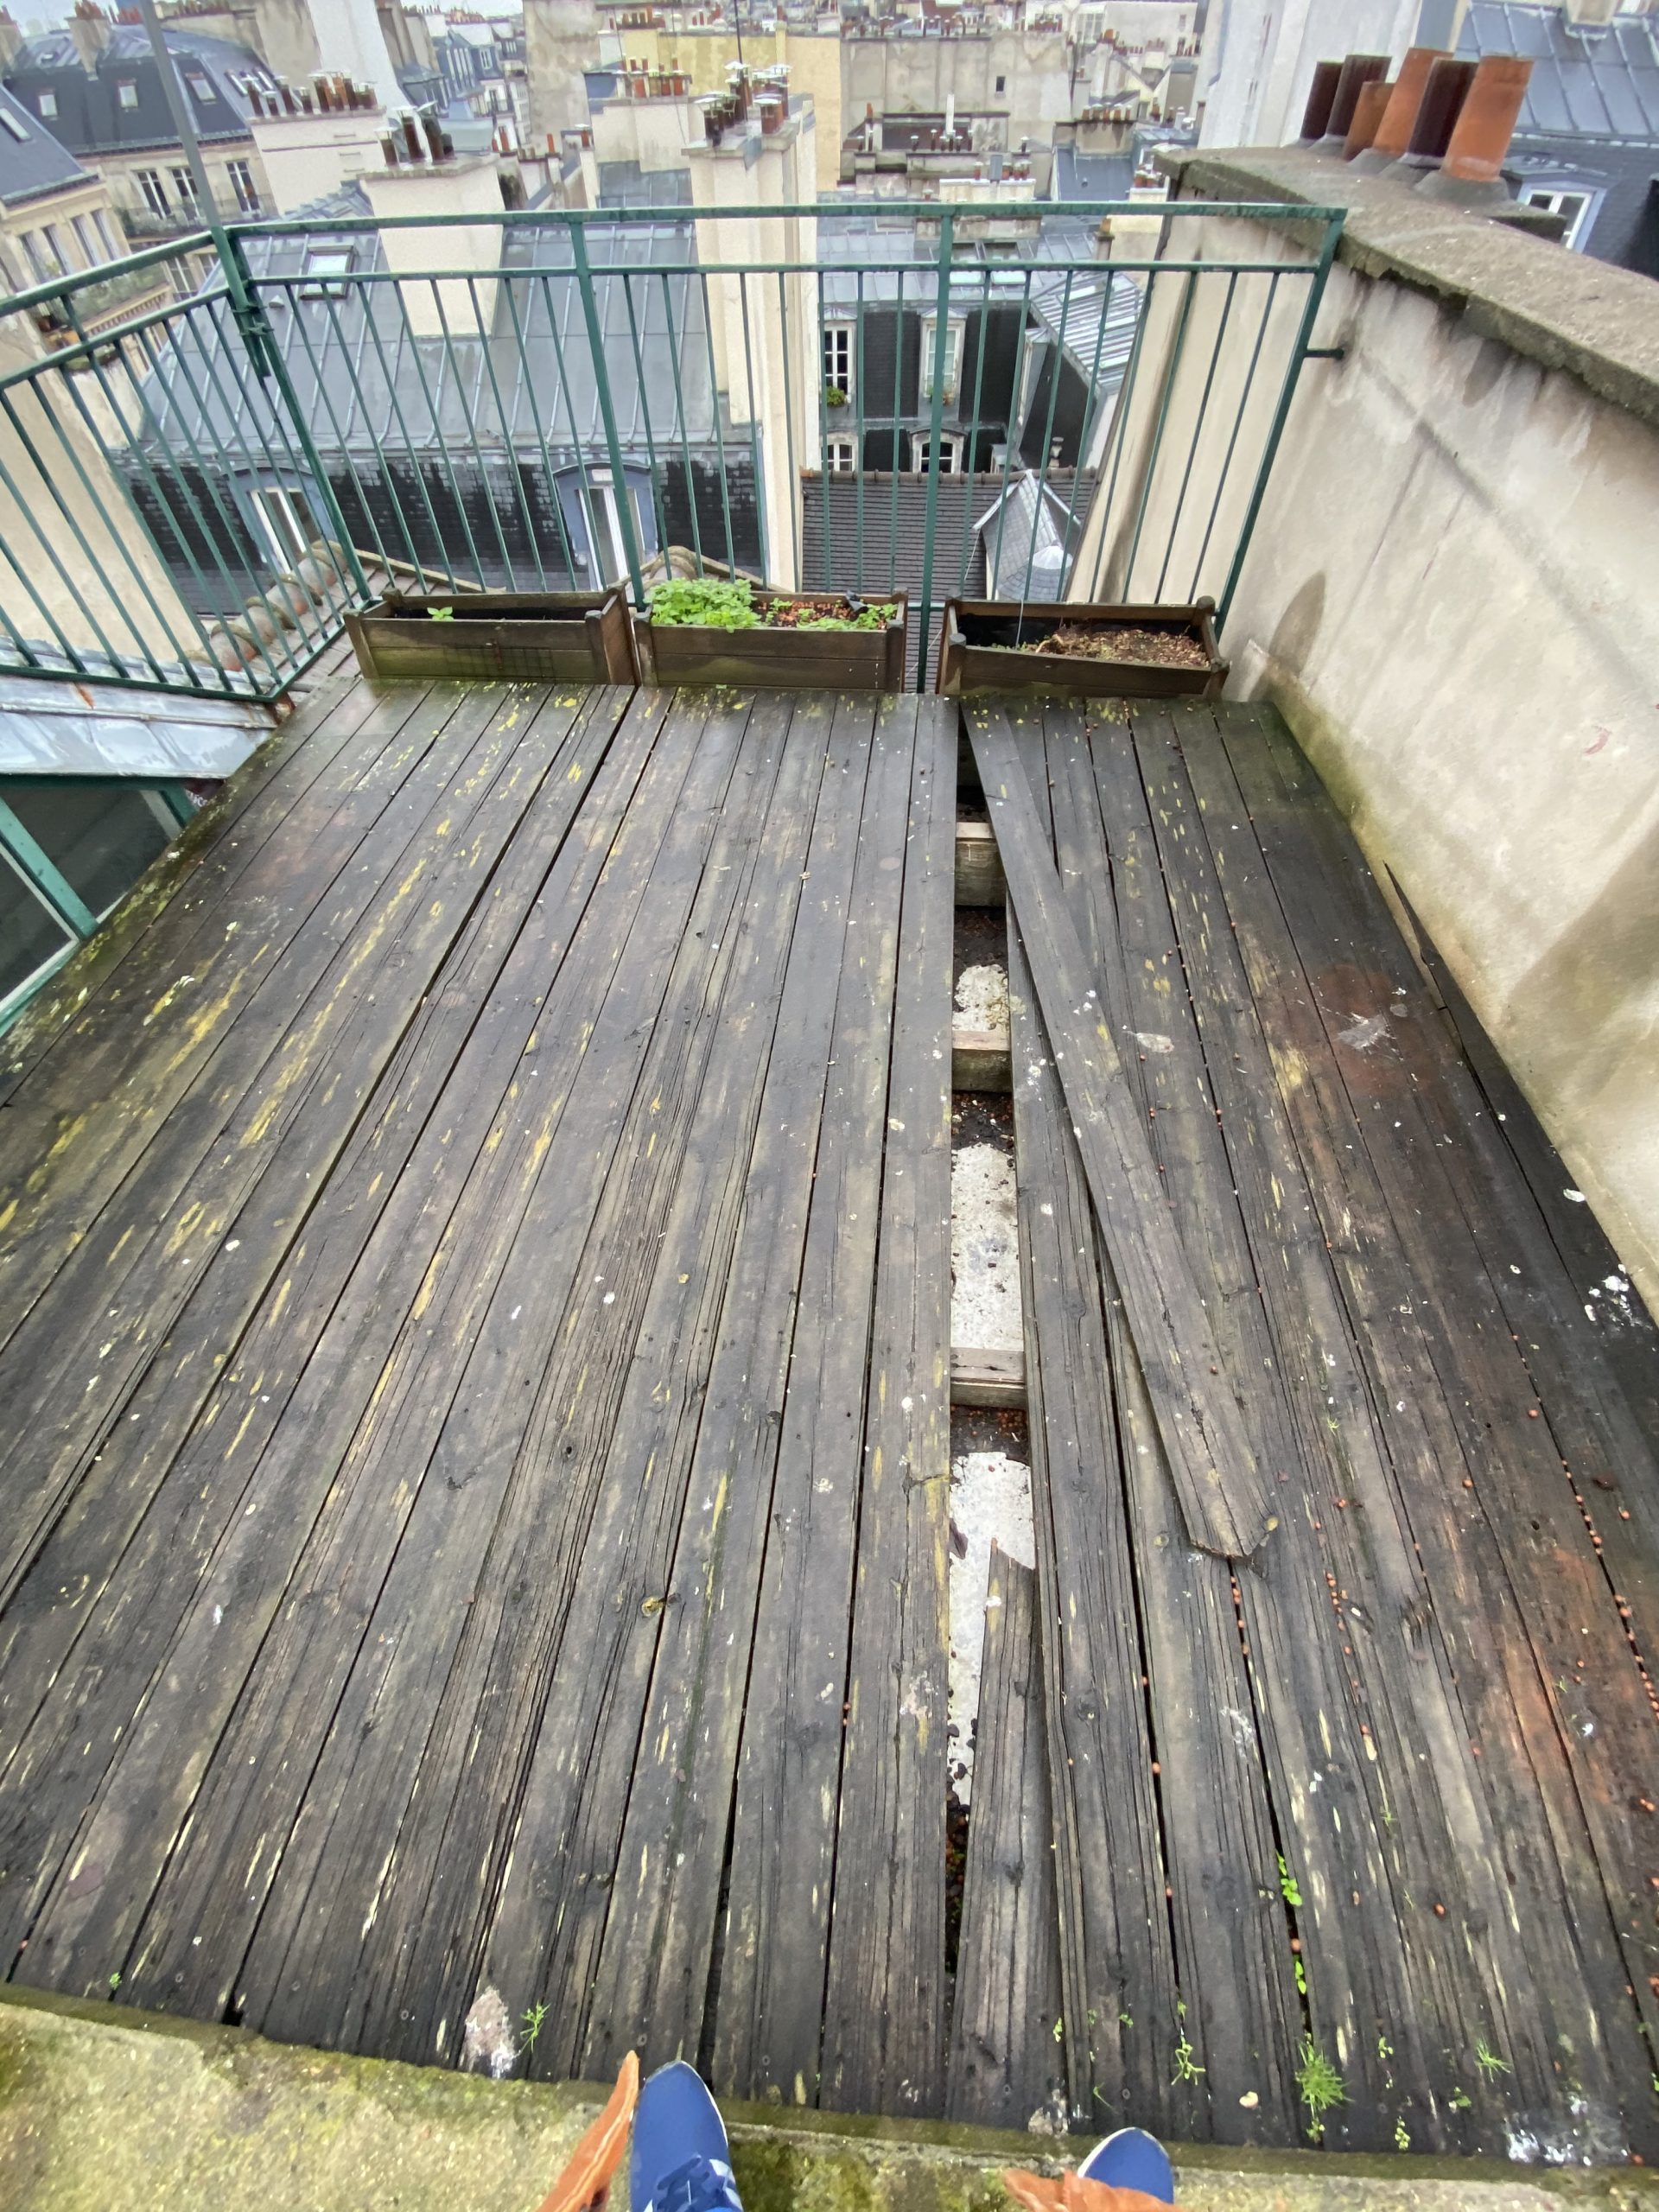 Planches de bois très abîmés sur une terrasse